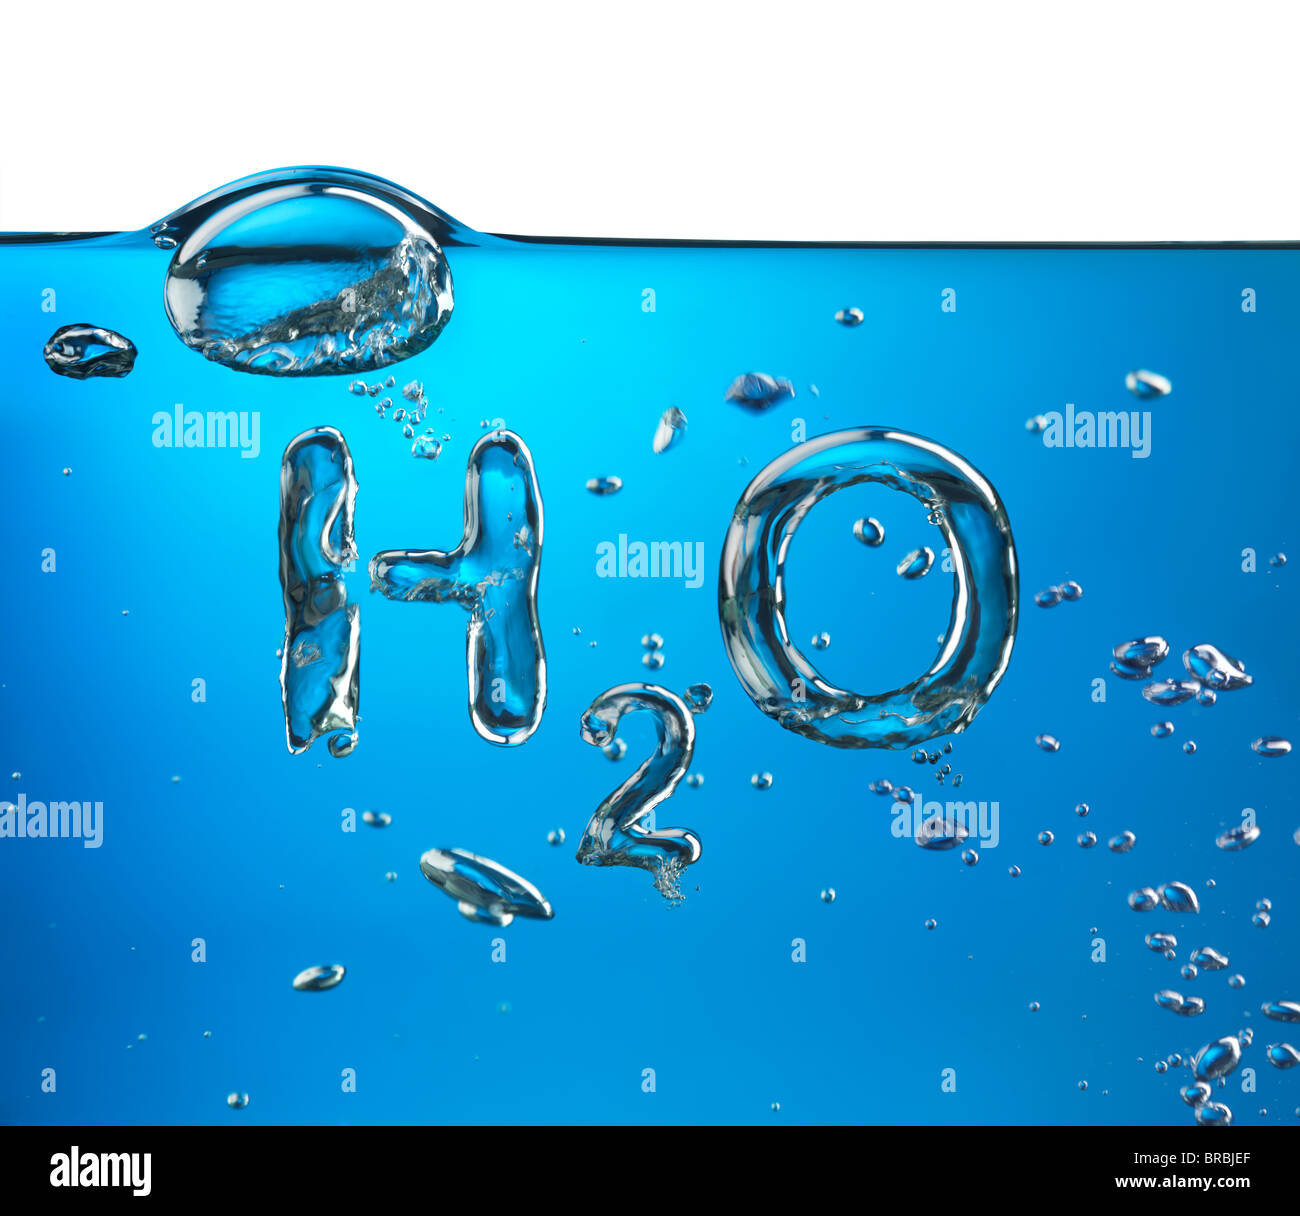 La fórmula del agua H2O realizados por burbujas de oxígeno, imagen conceptual. Foto de stock